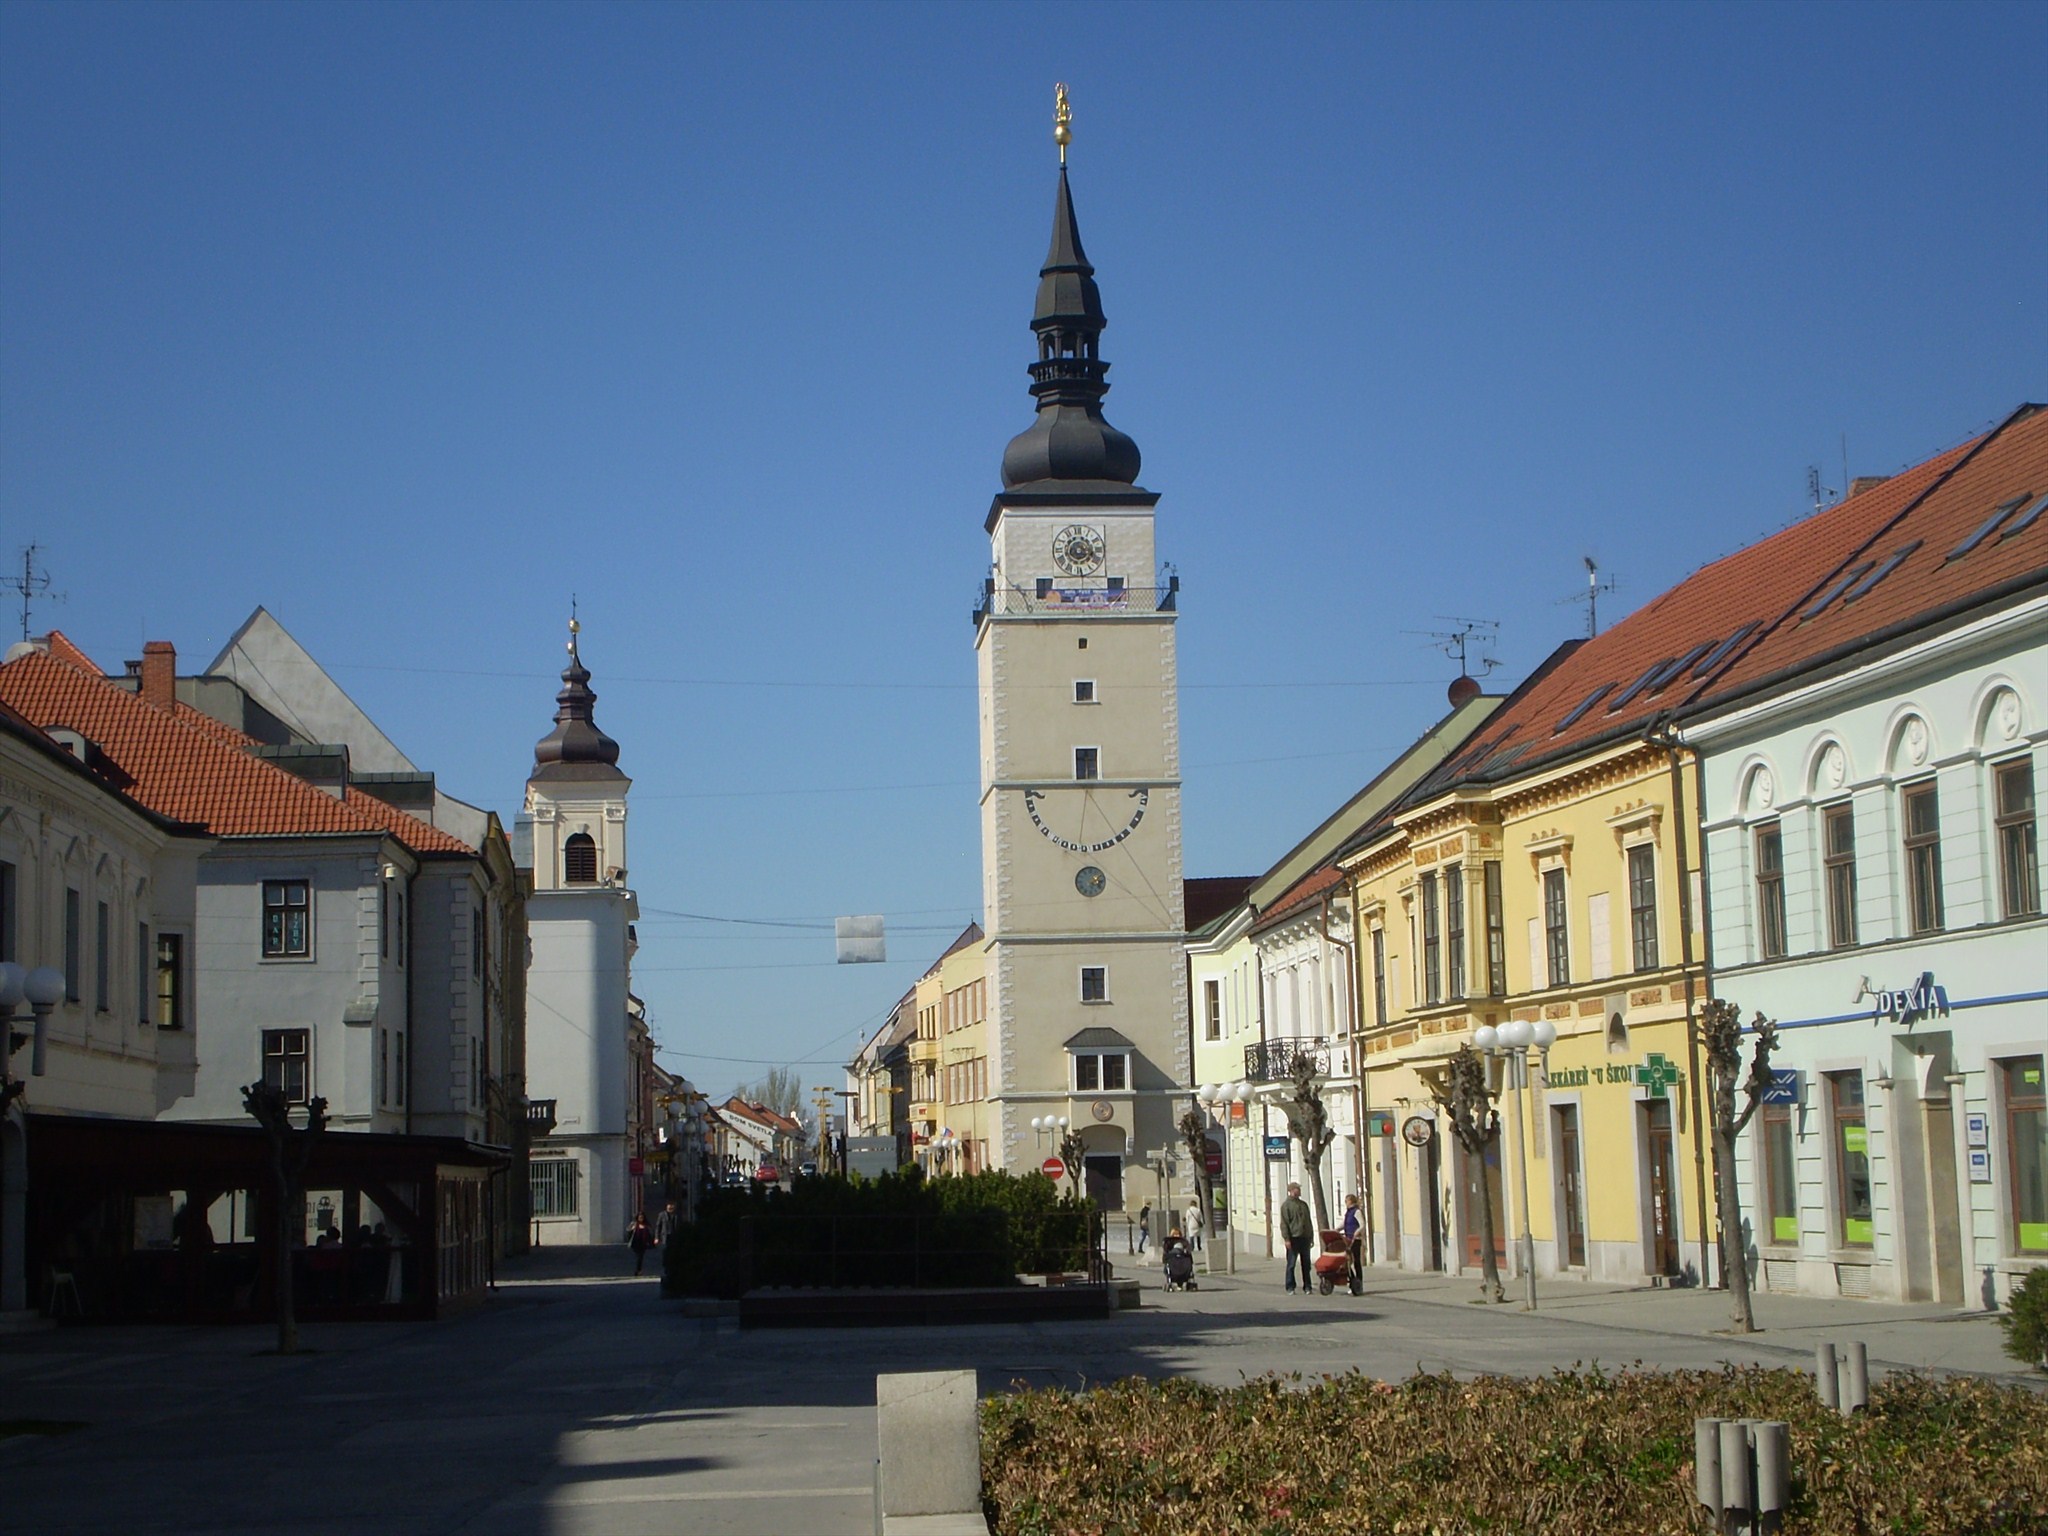 Mestská veža (City Tower) - Trnava, Slovakia Image